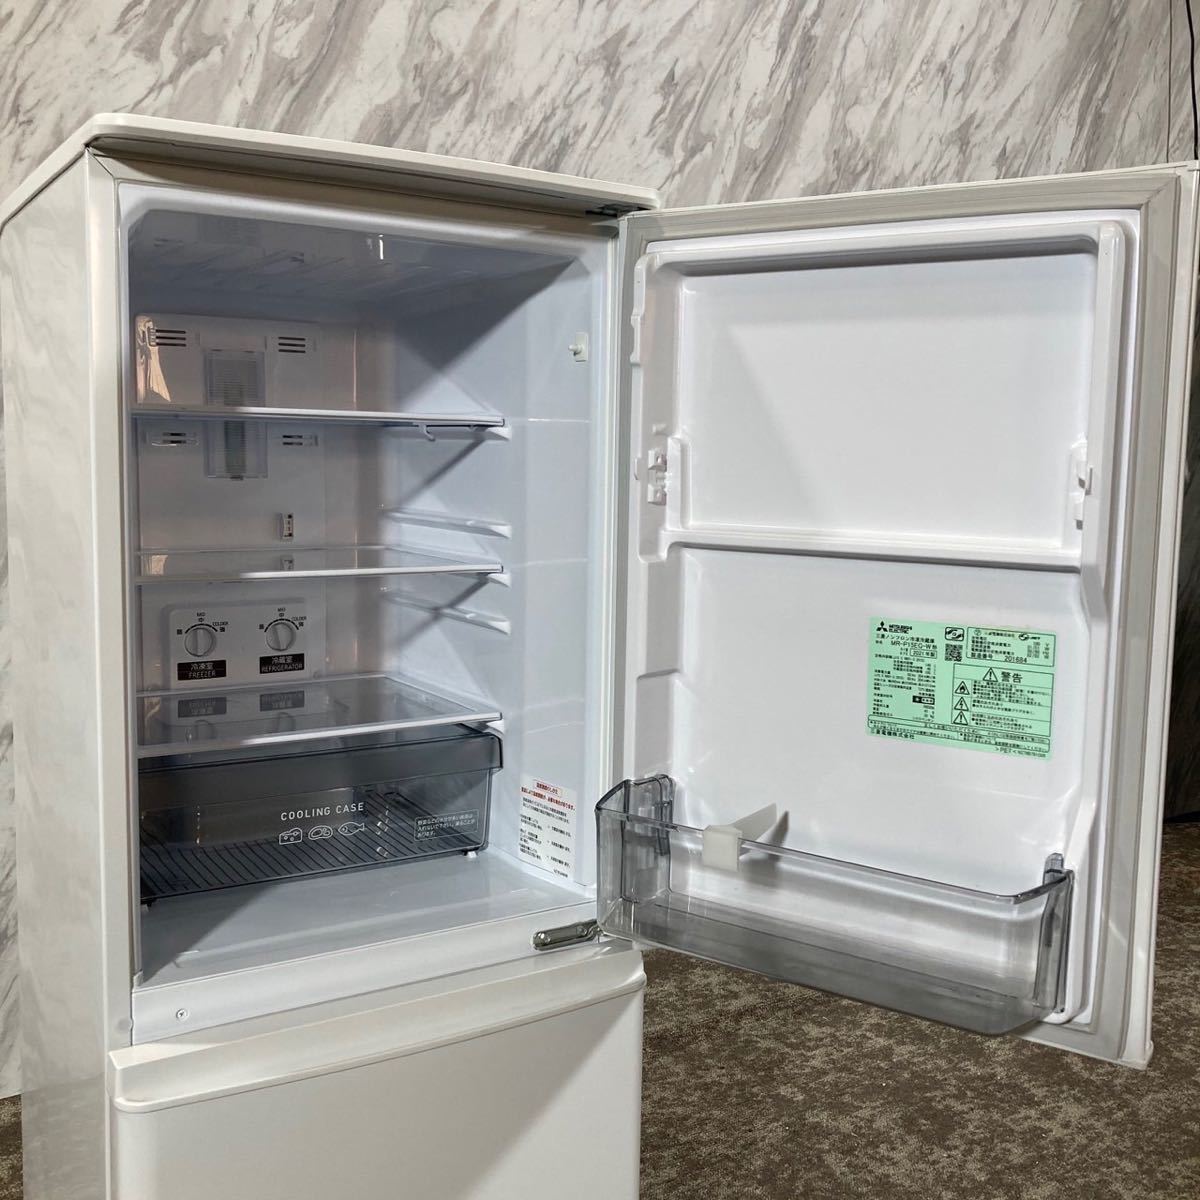 売れ筋商品 MITSUBISHI 冷蔵庫 MR-P15EG-W 146L 家電 K688 100リットル